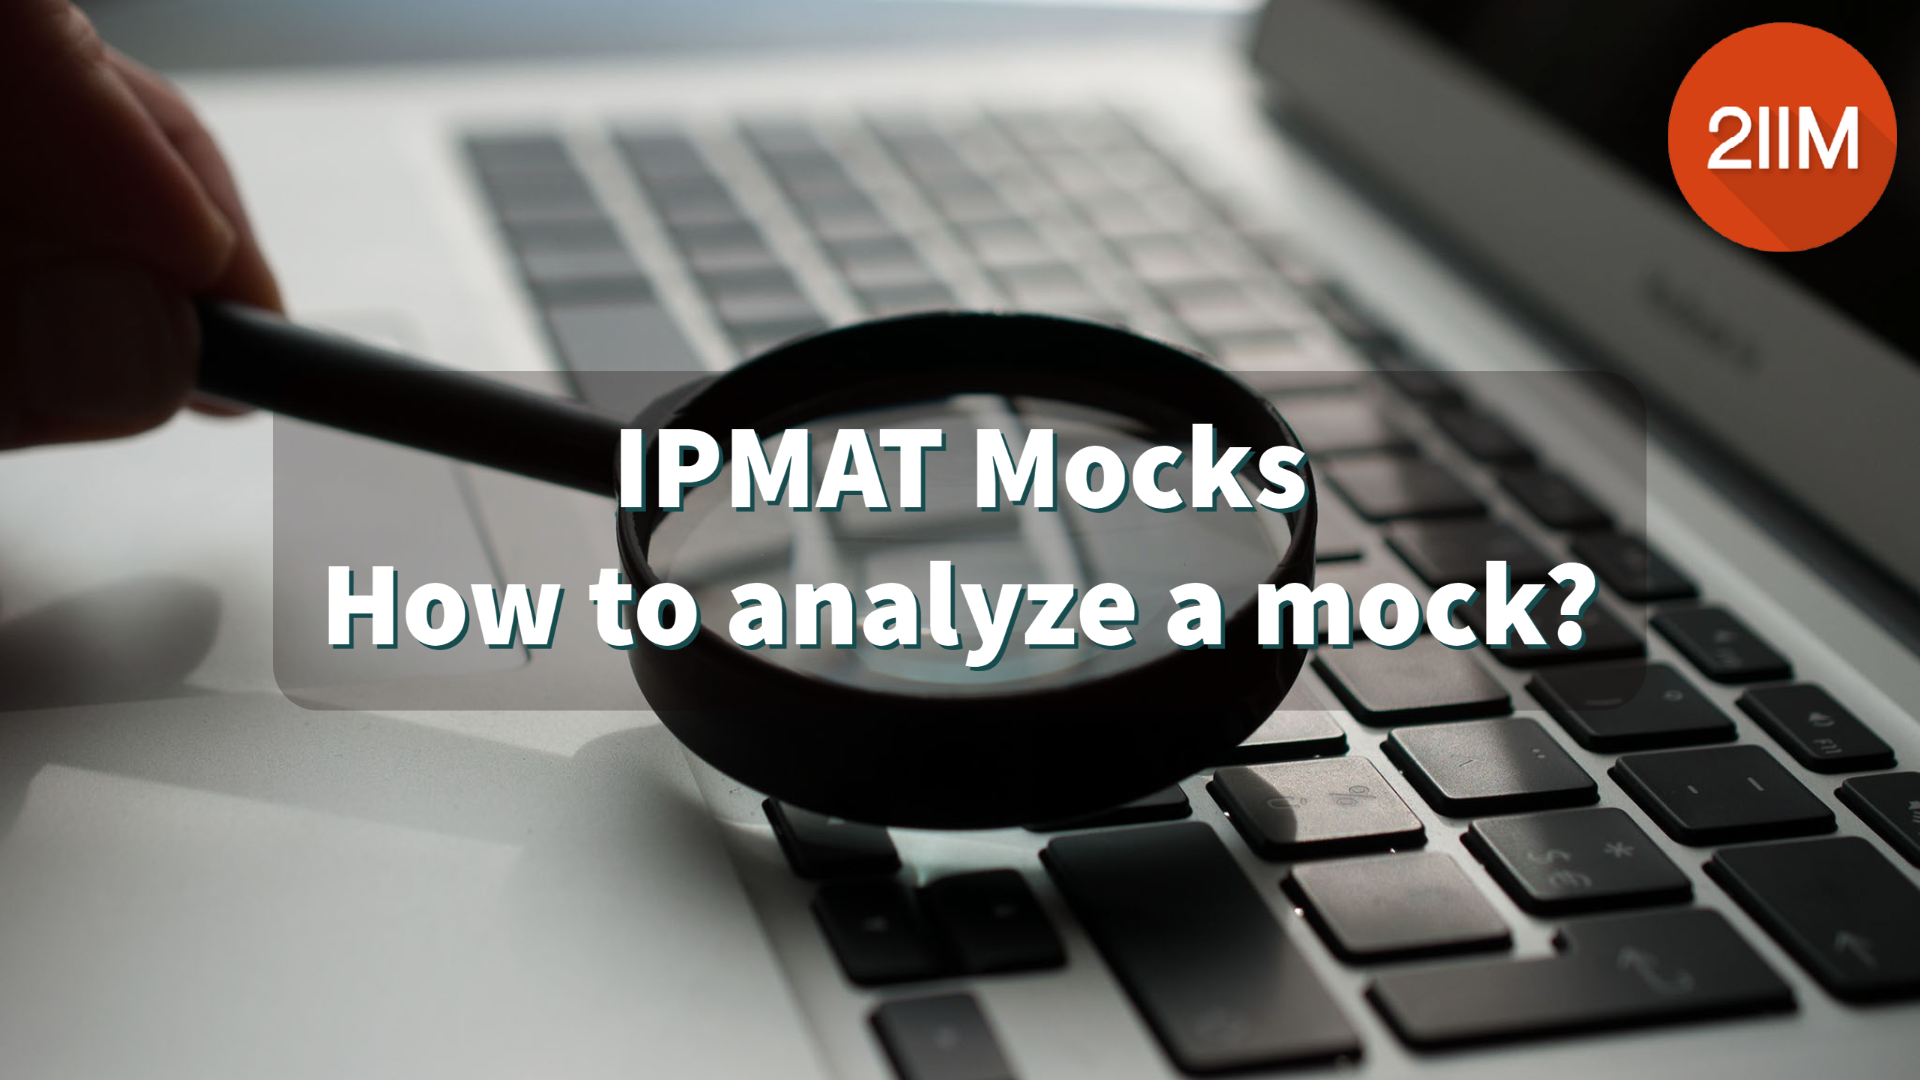 IPMAT Mocks: How to analyze a mock?